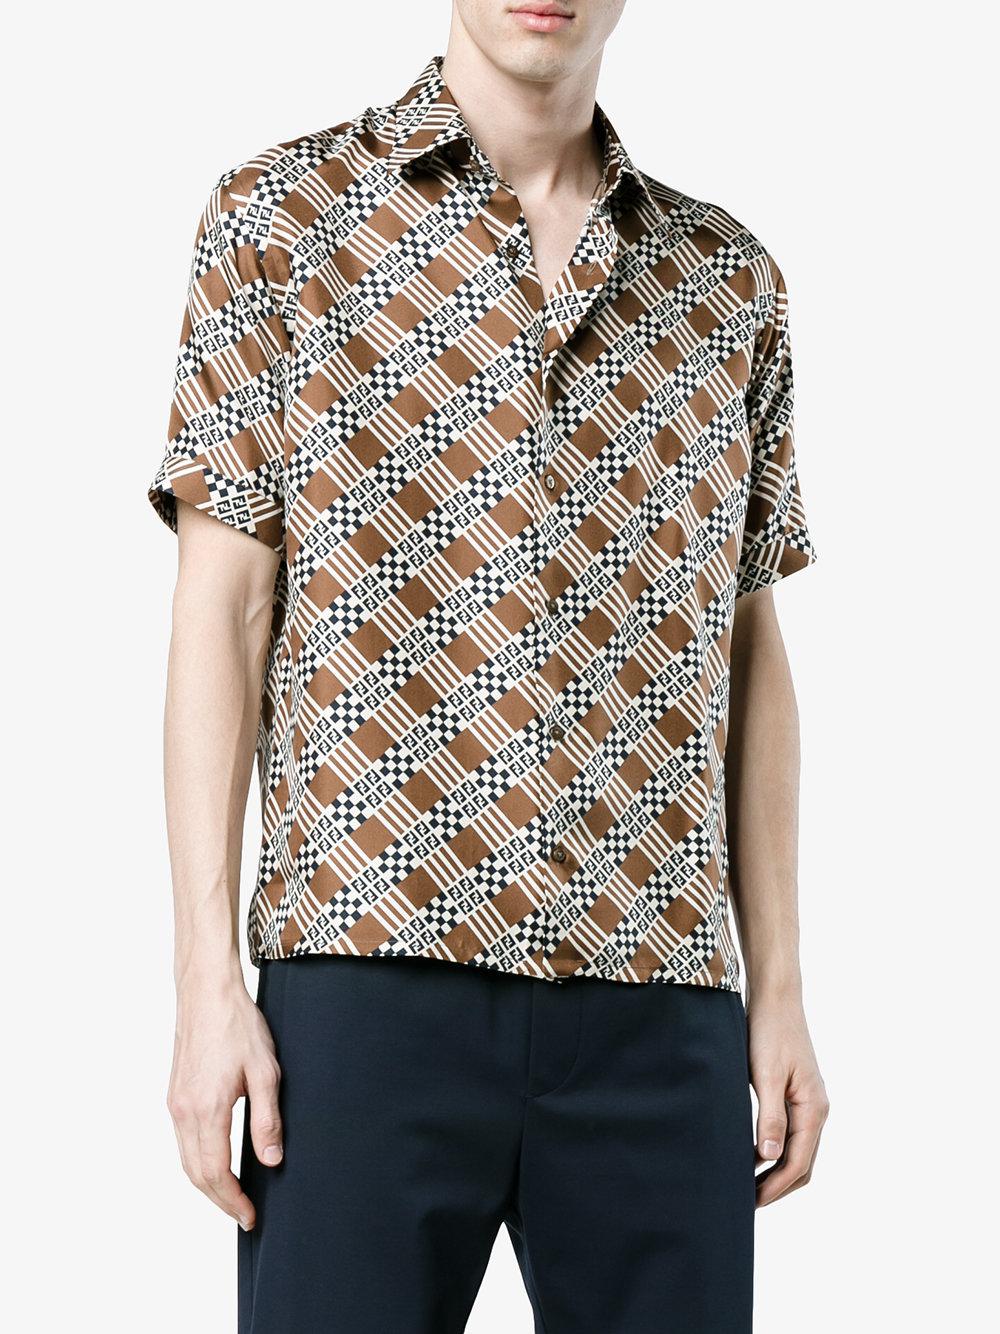 Fendi Damier Print Shirt in Brown for Men - Lyst